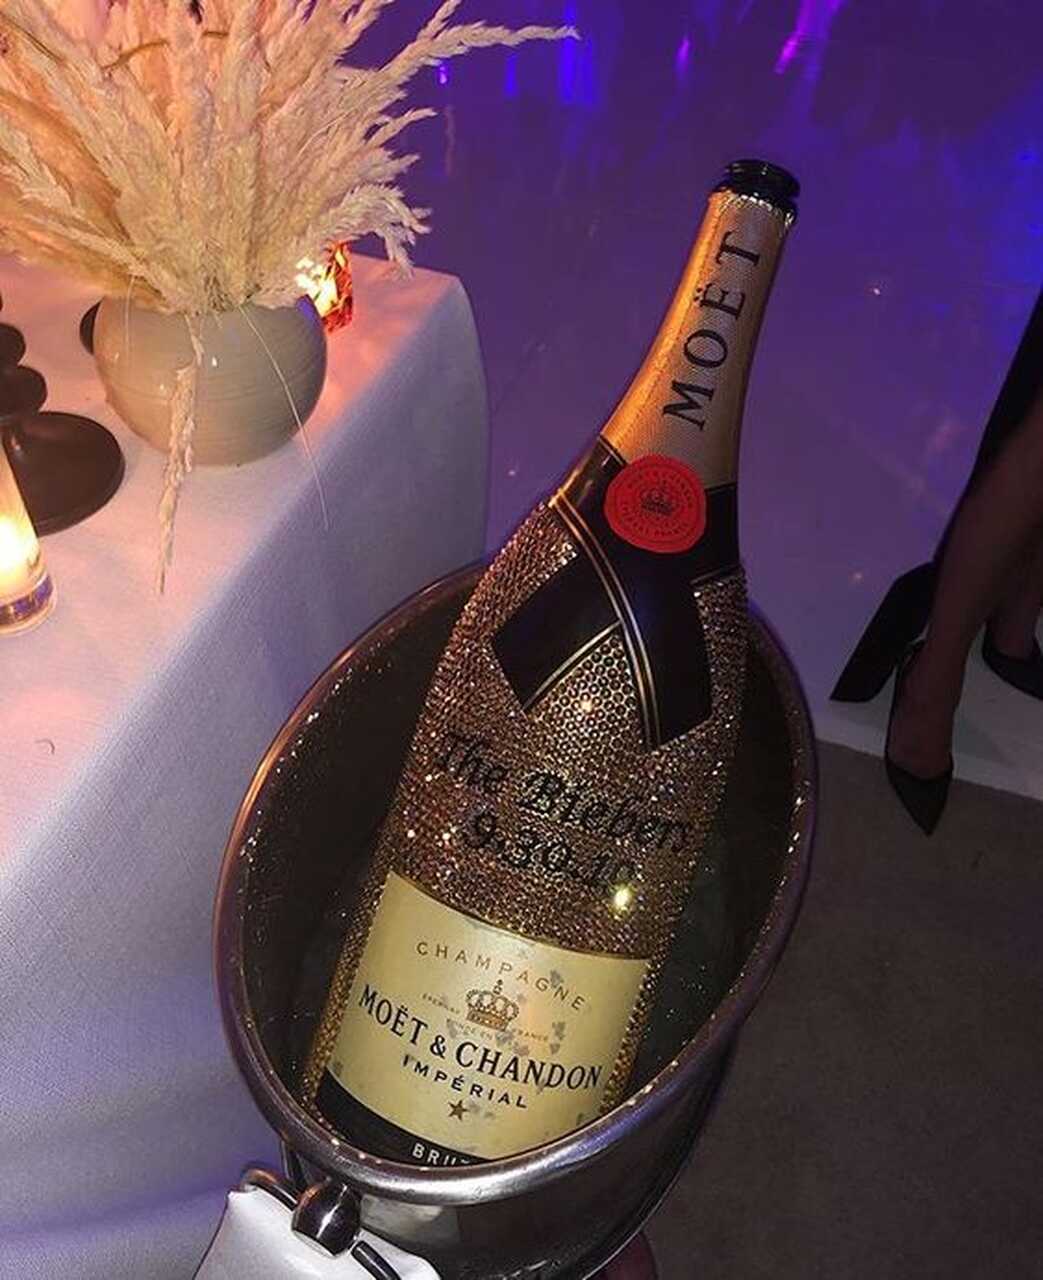 Champagne personalizado com o sobrenome dos noivos e data do casamento